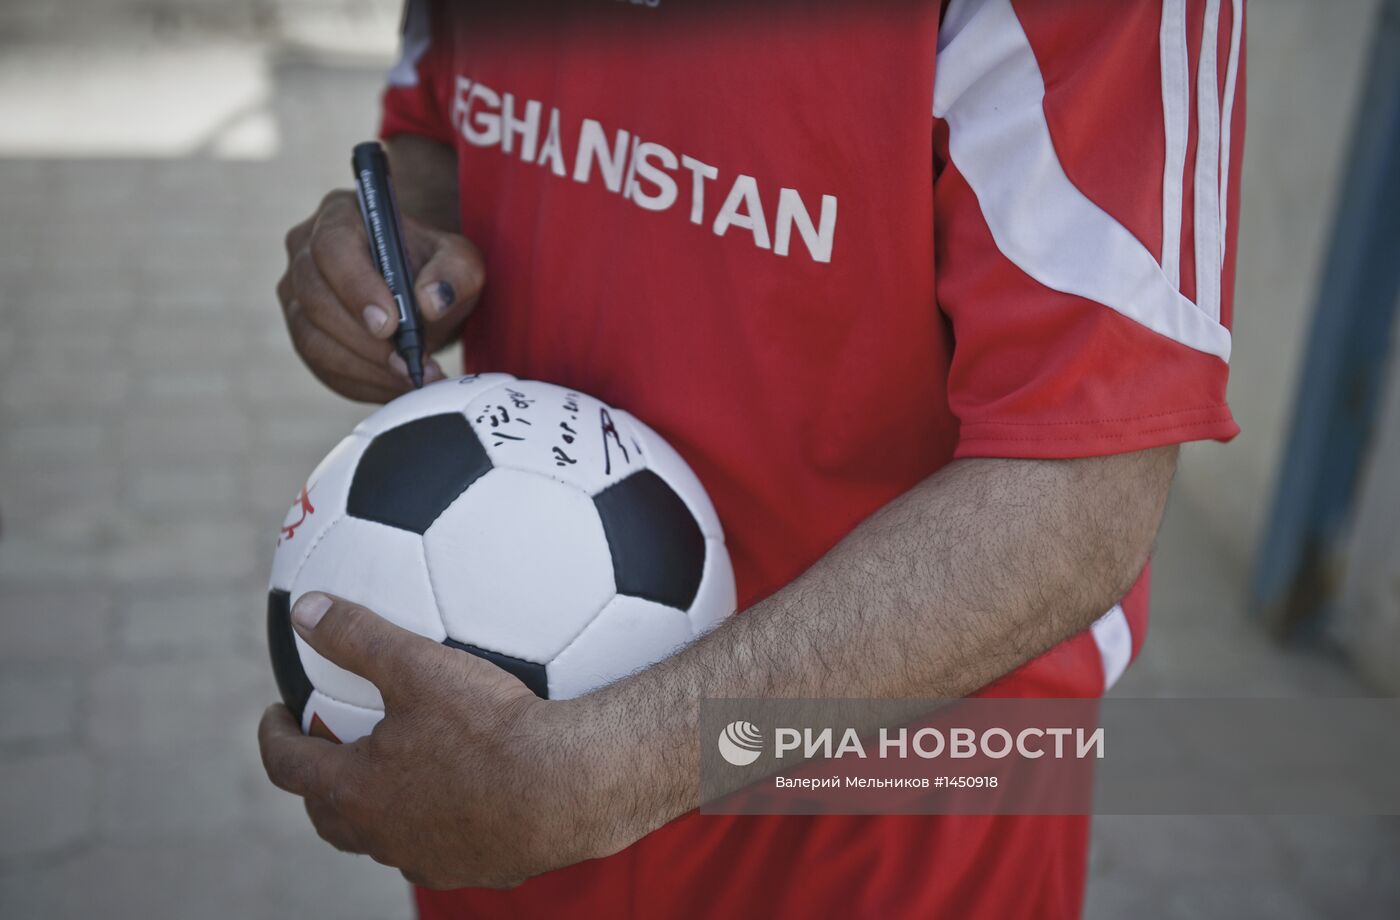 Футбольный матч серии "Шурави против моджахедов" в Кабуле